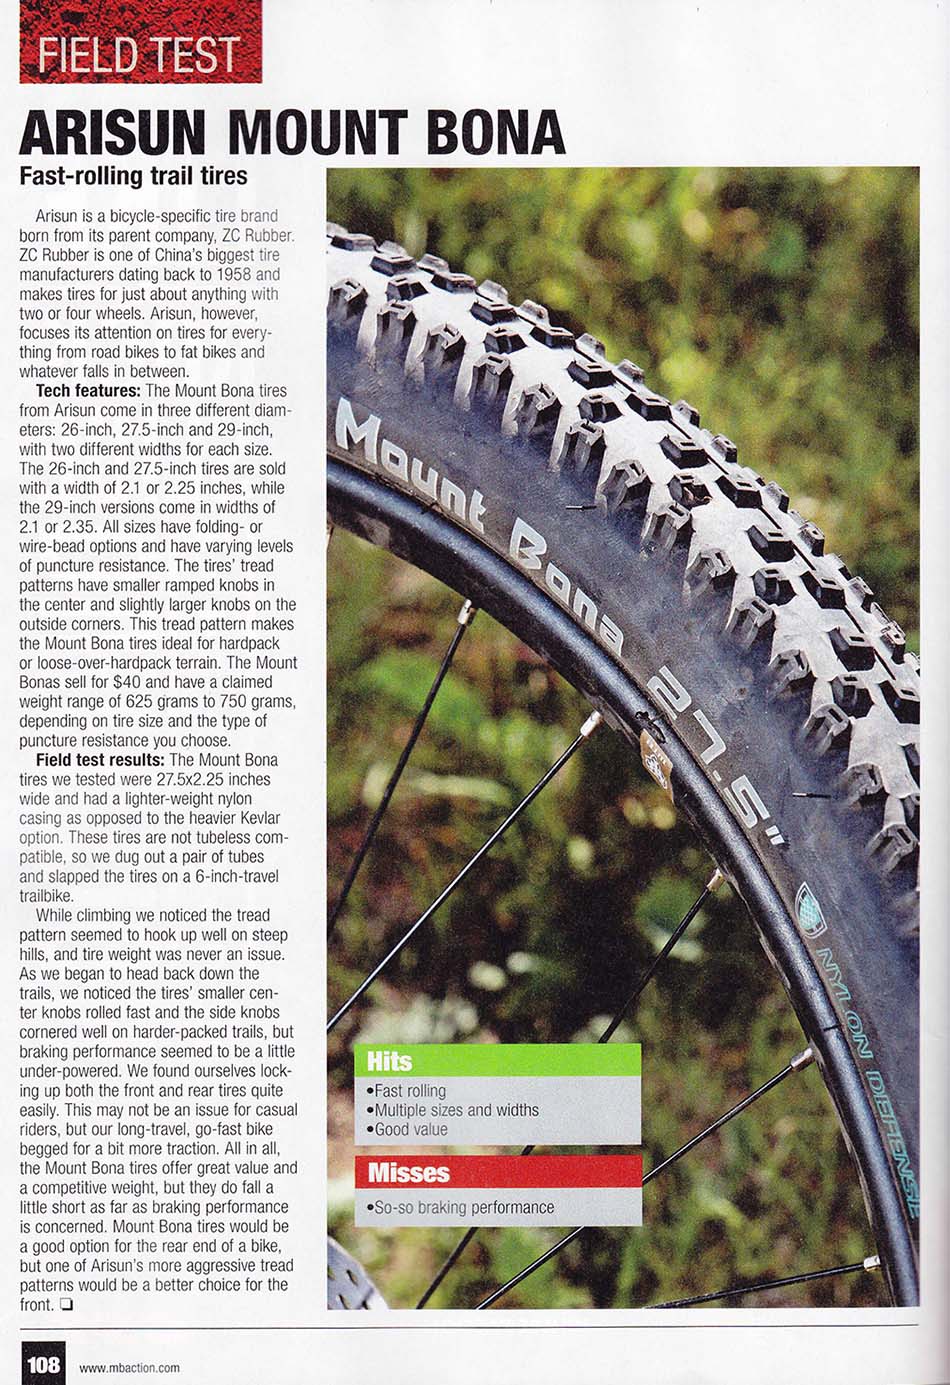 Mountain Bike Action Magazine review of Mount Bona